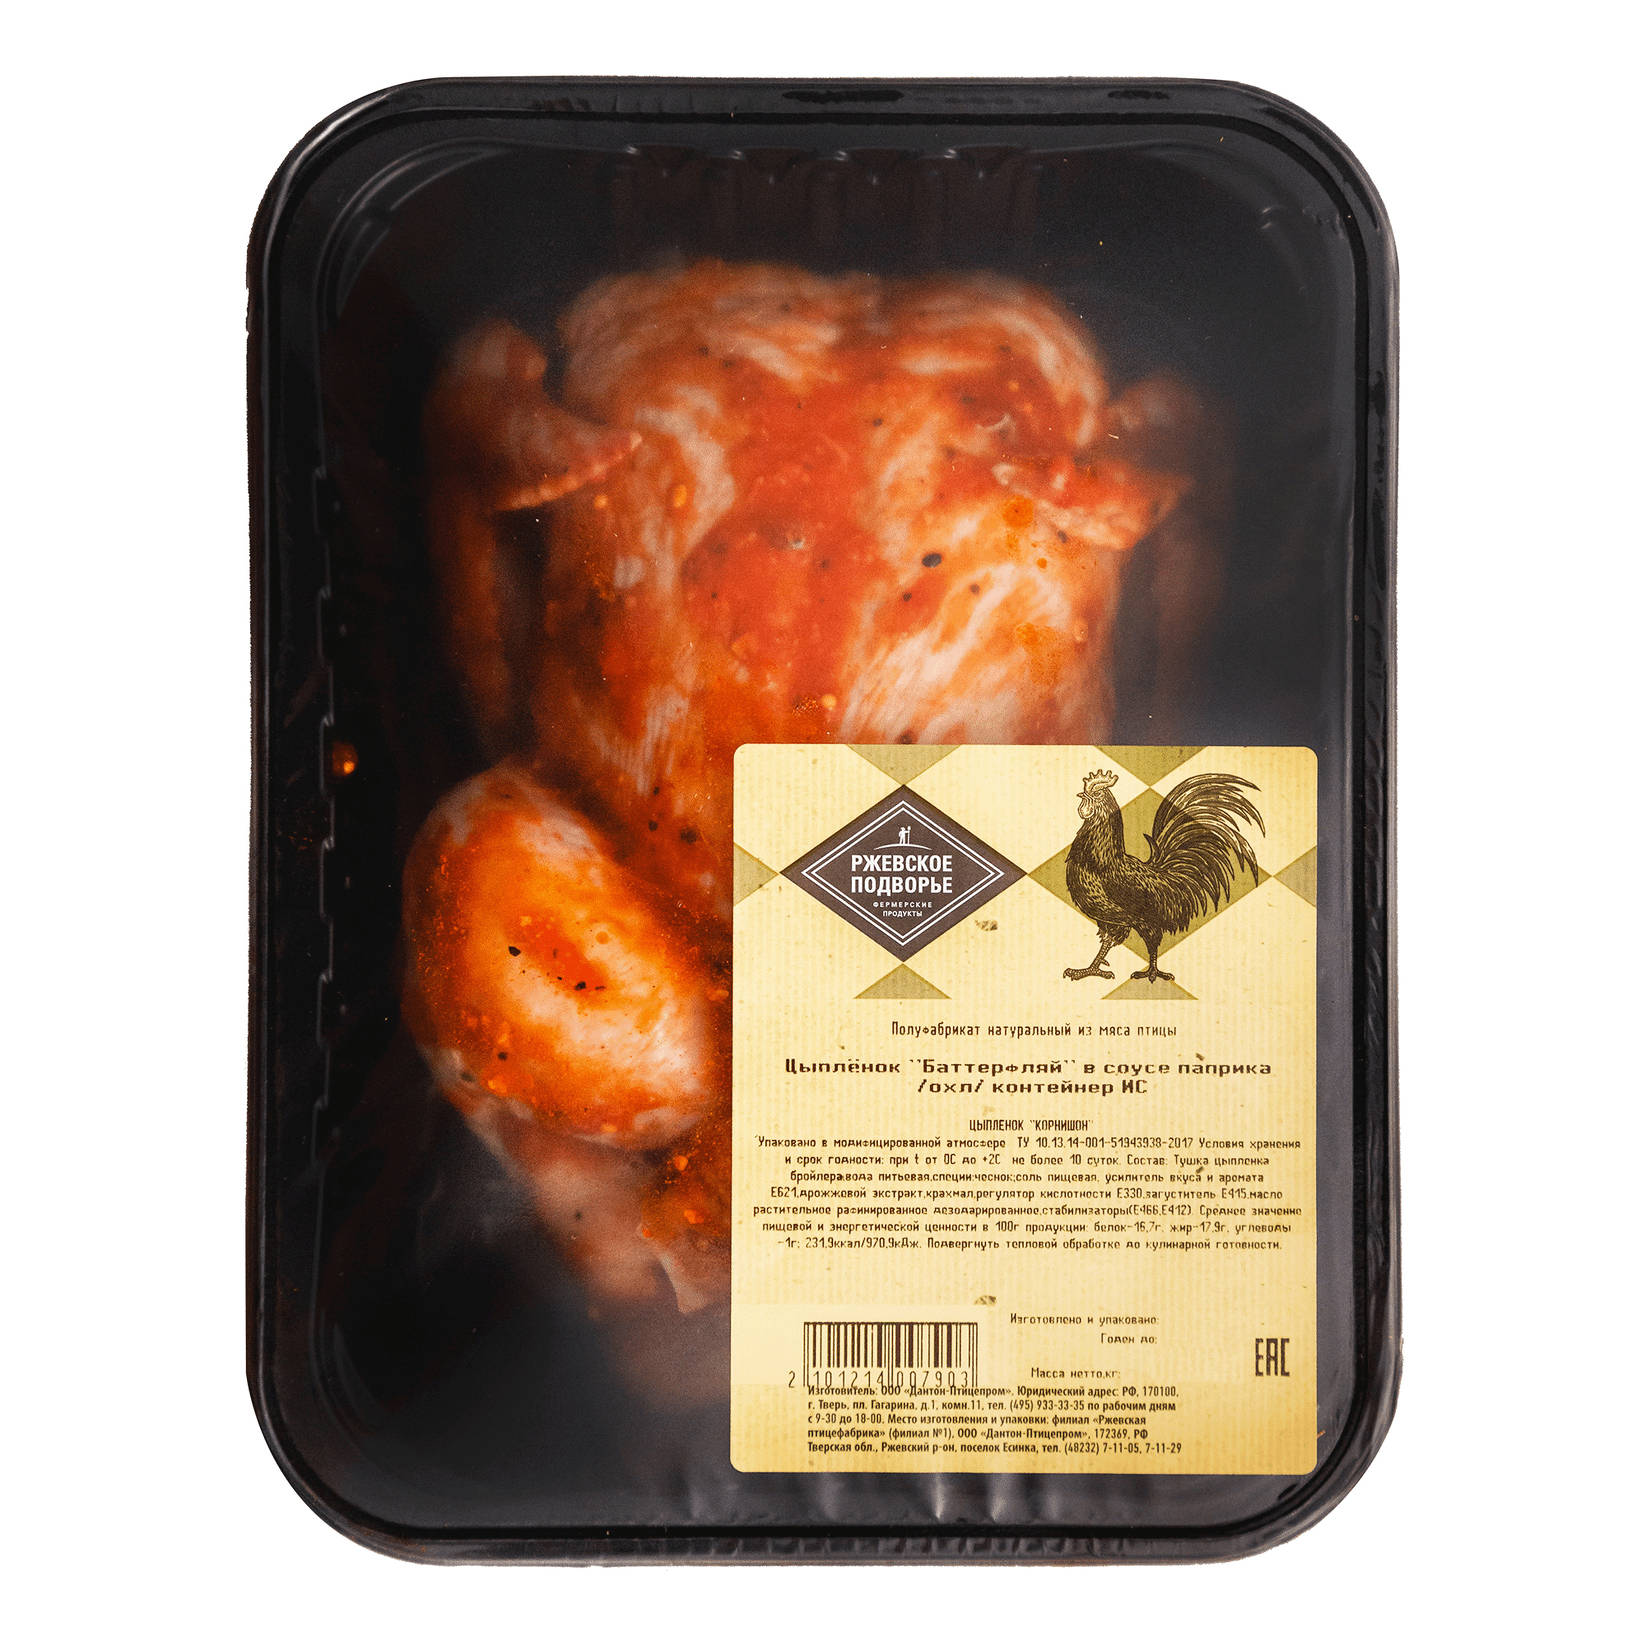 Тушка цыпленка-корнишона Ржевское Подворье в соусе Паприка кг